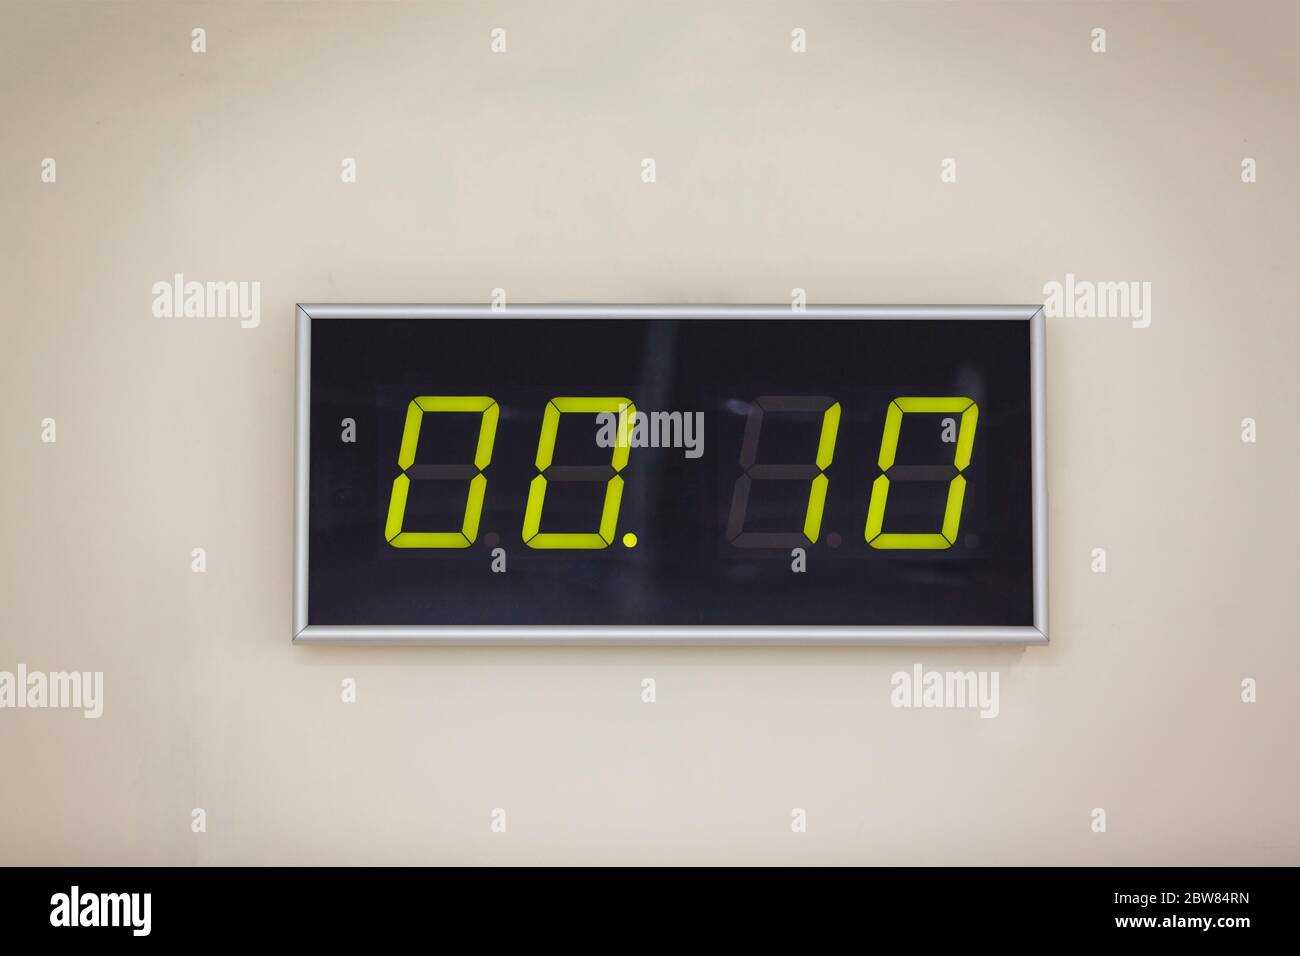 Horloge numérique noire sur fond blanc indiquant l'heure 00:10 Photo Stock  - Alamy